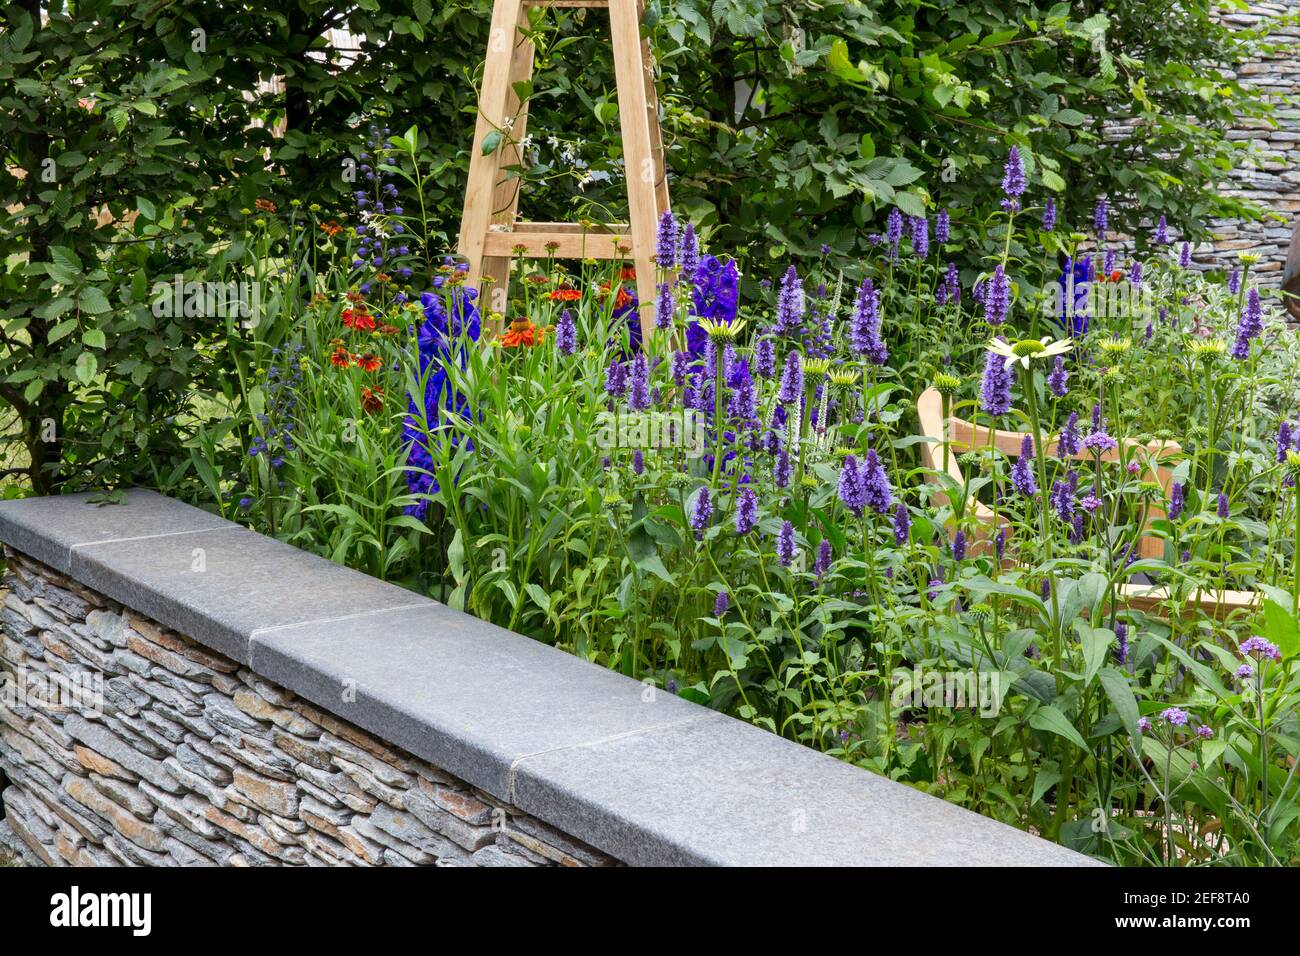 Un jardin de campagne anglais avec un obélisque de mur de pierre sèche et bordure de lit de fleurs cultivant des fleurs d'Agastache en été Royaume-Uni Angleterre Banque D'Images